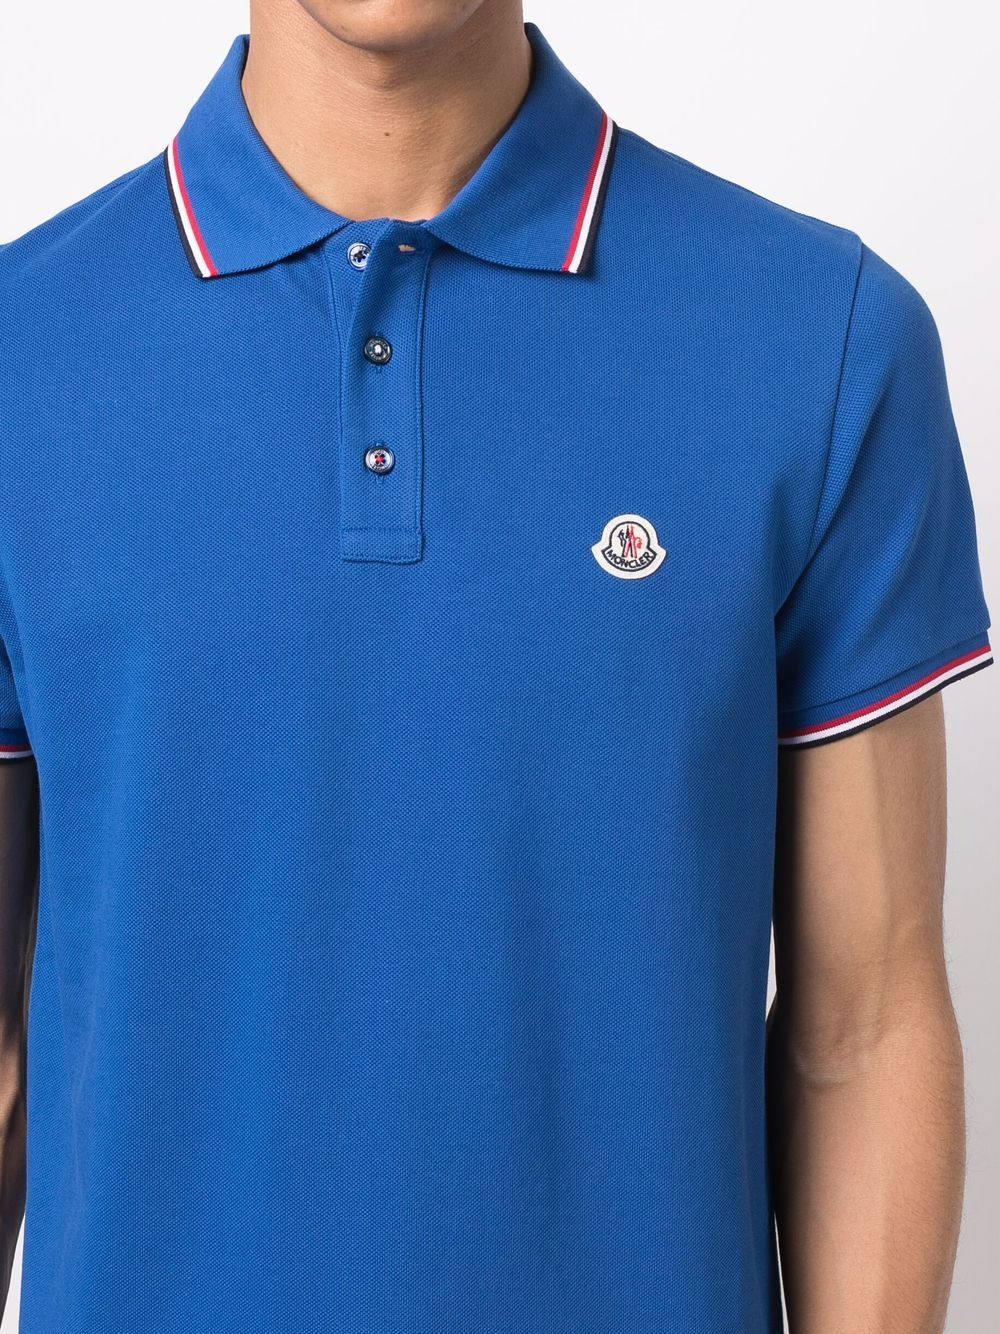 Moncler logo-patch Cotton Polo Shirt - Farfetch